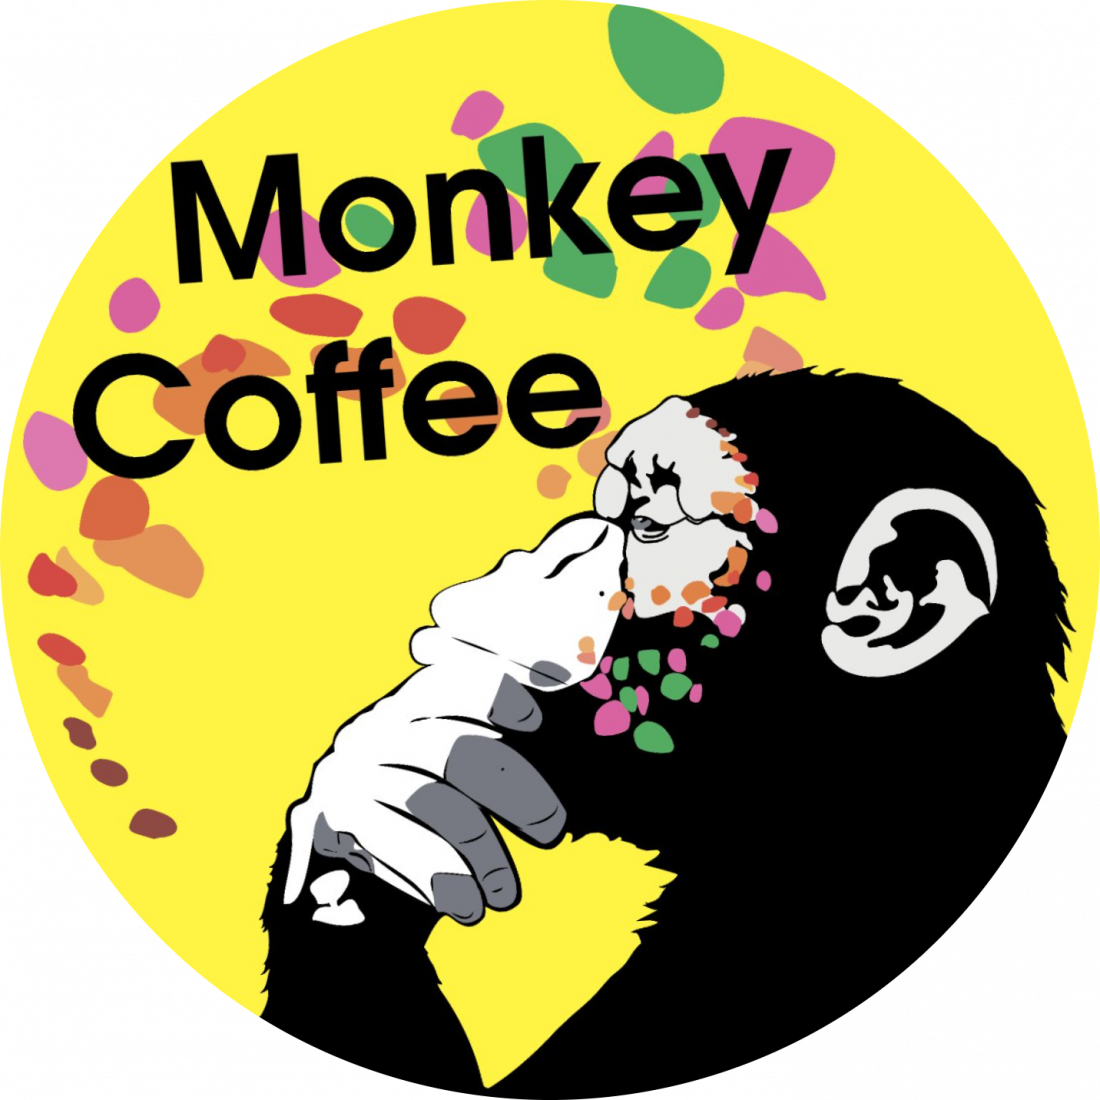 Клюквенный, облепиховый взвар, гранатовый пунш, кофе от 2,50 р. в "Monkey coffee"